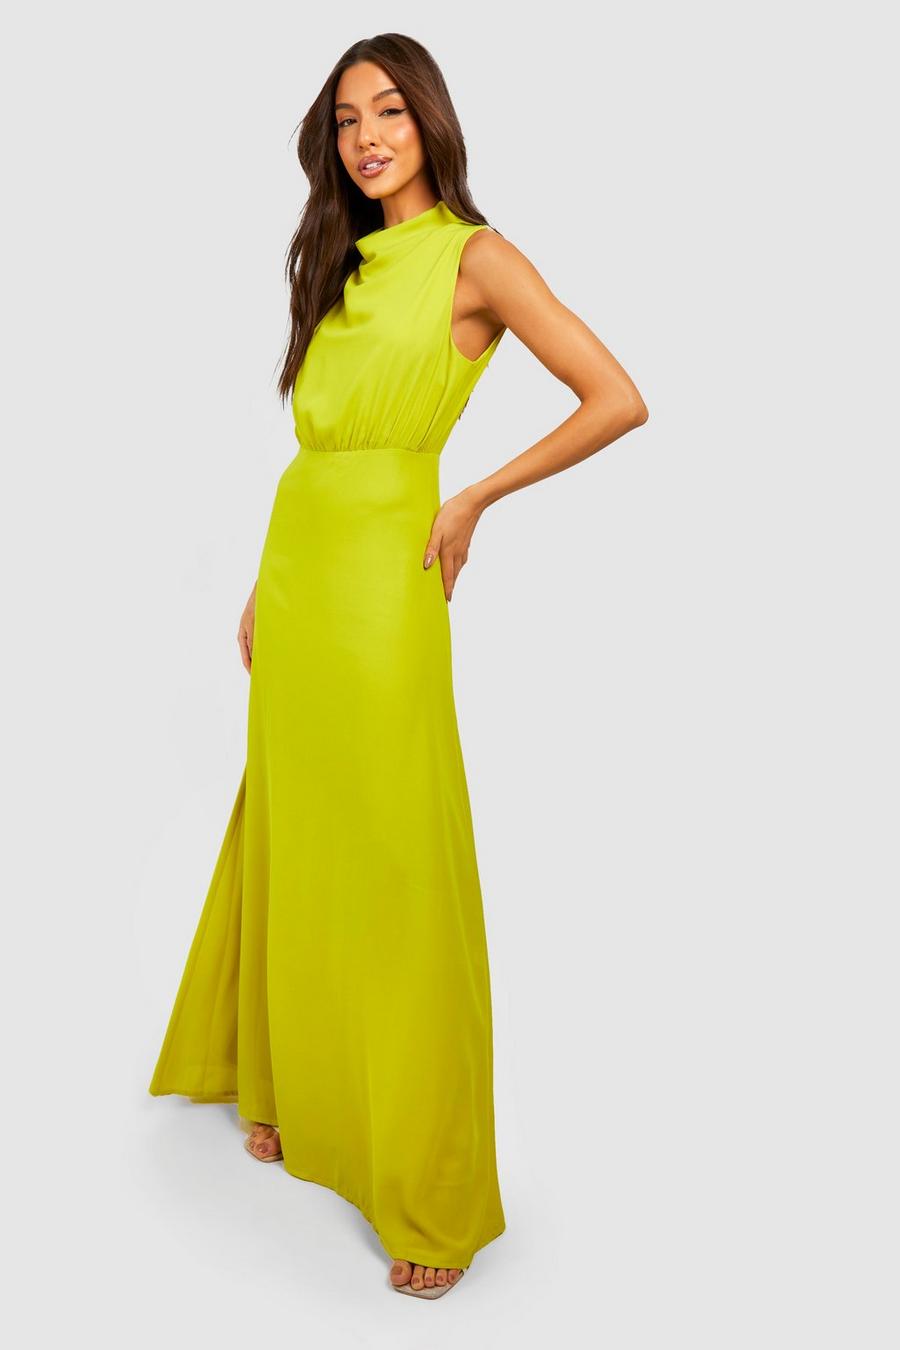 Chartreuse yellow Chiffon High Neck Cowl Draped Maxi Dress